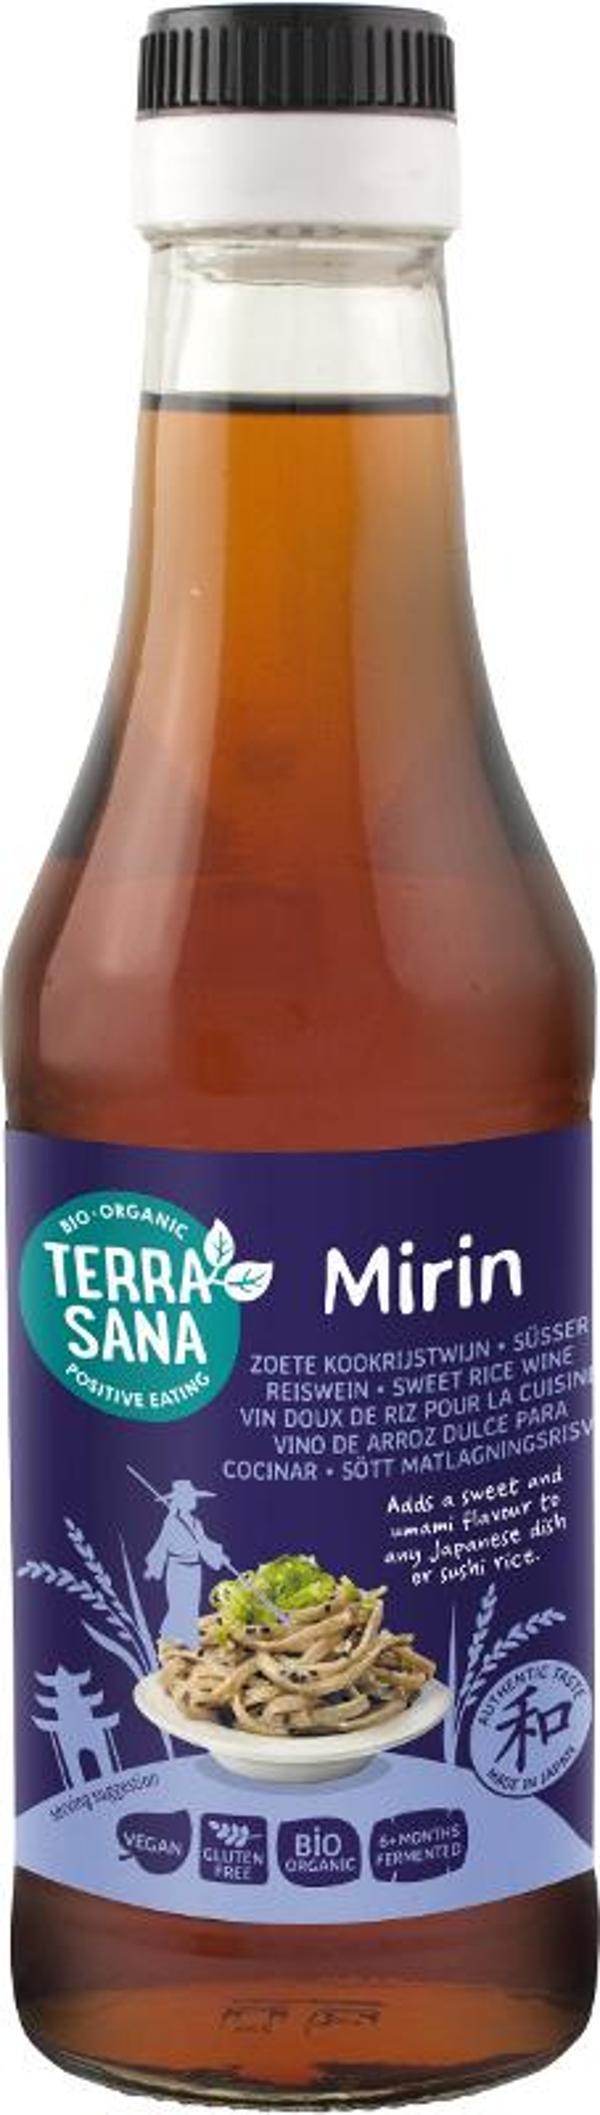 Produktfoto zu Mirin -  Süsser Reiswein 0,25